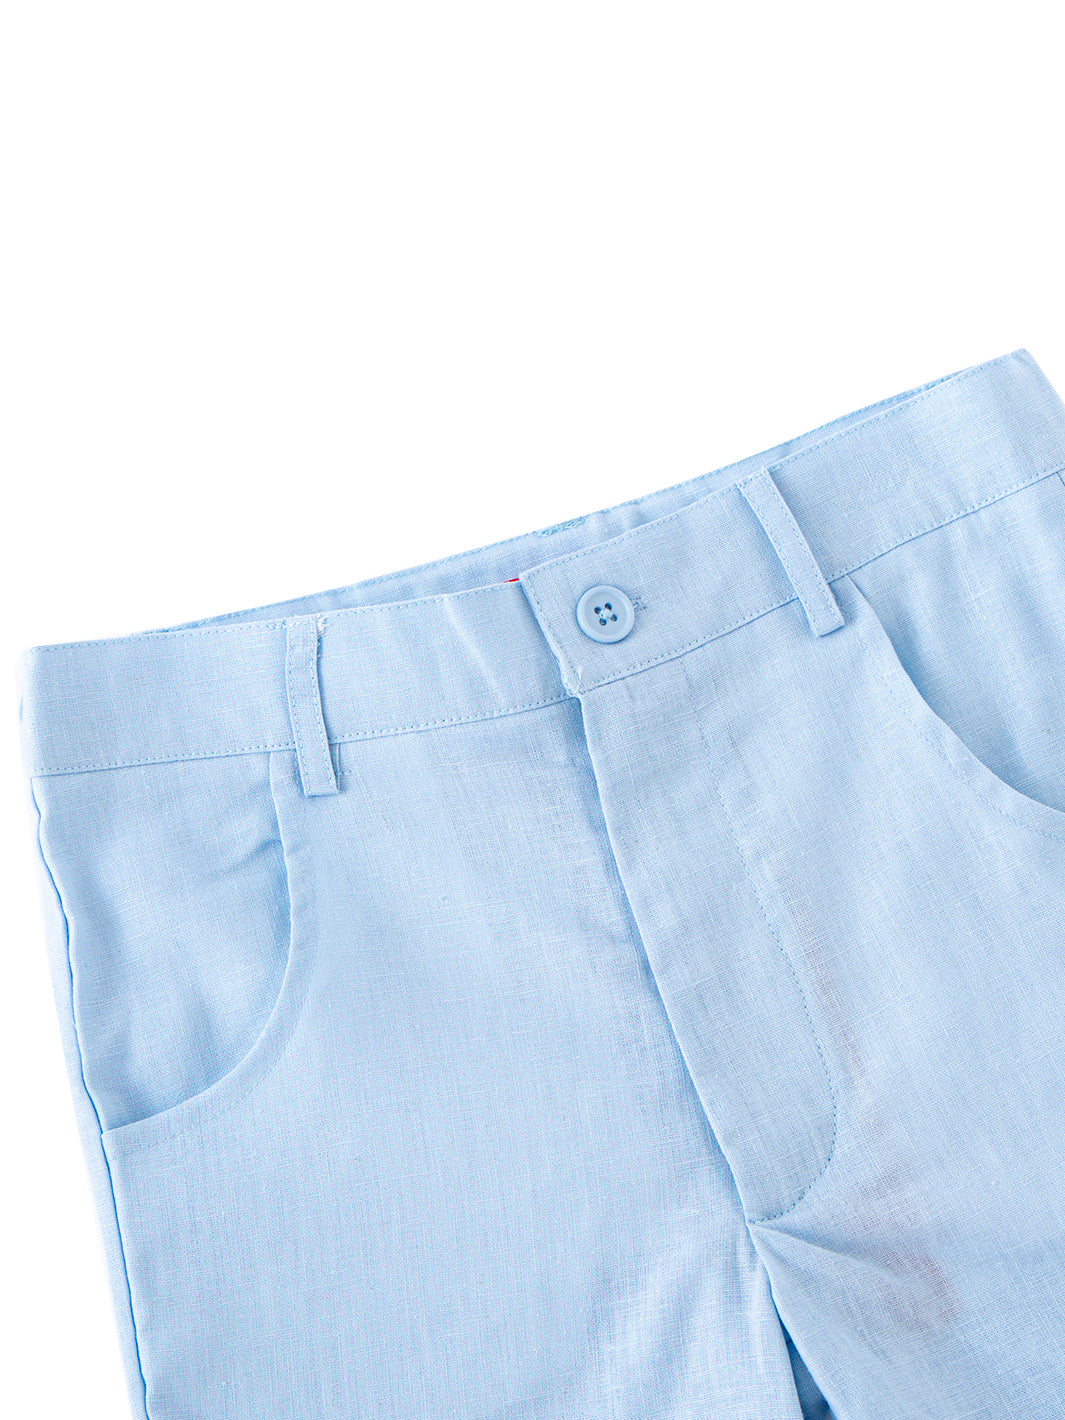 Linen Shorts Pants -  Blue